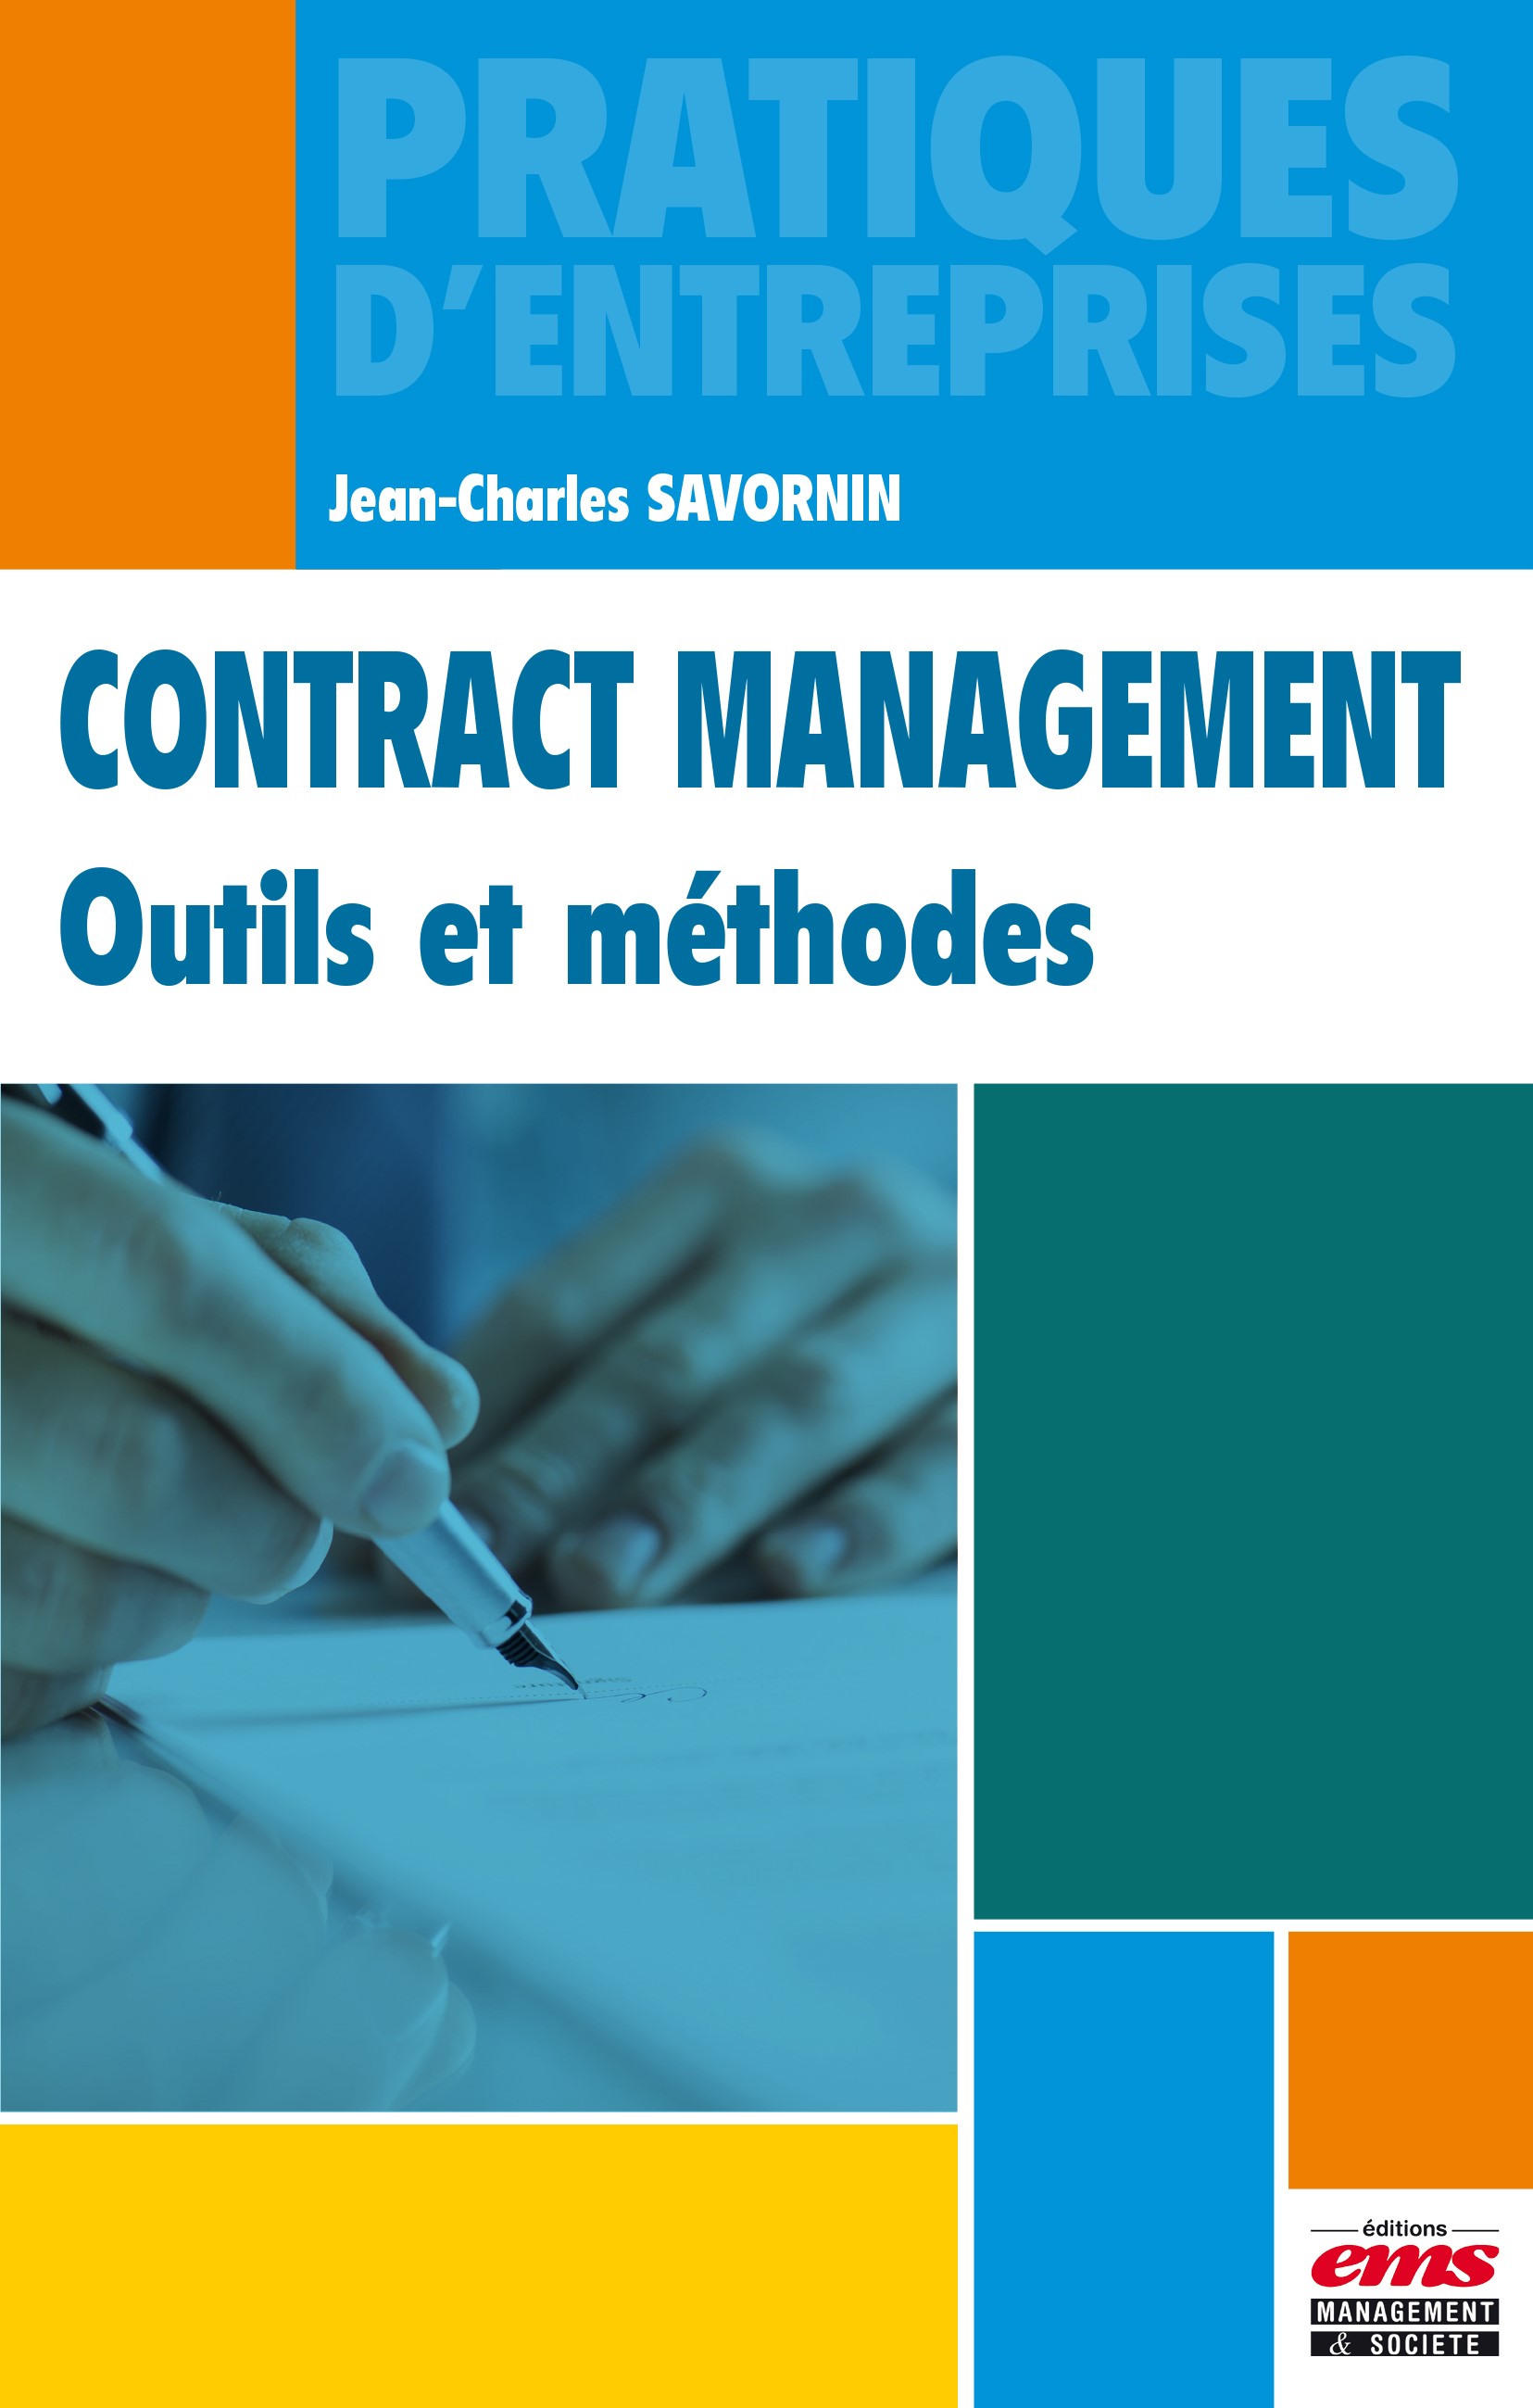  Nouvel ouvrage sur le Contract Management : interview de l’auteur, Jean-Charles Savornin